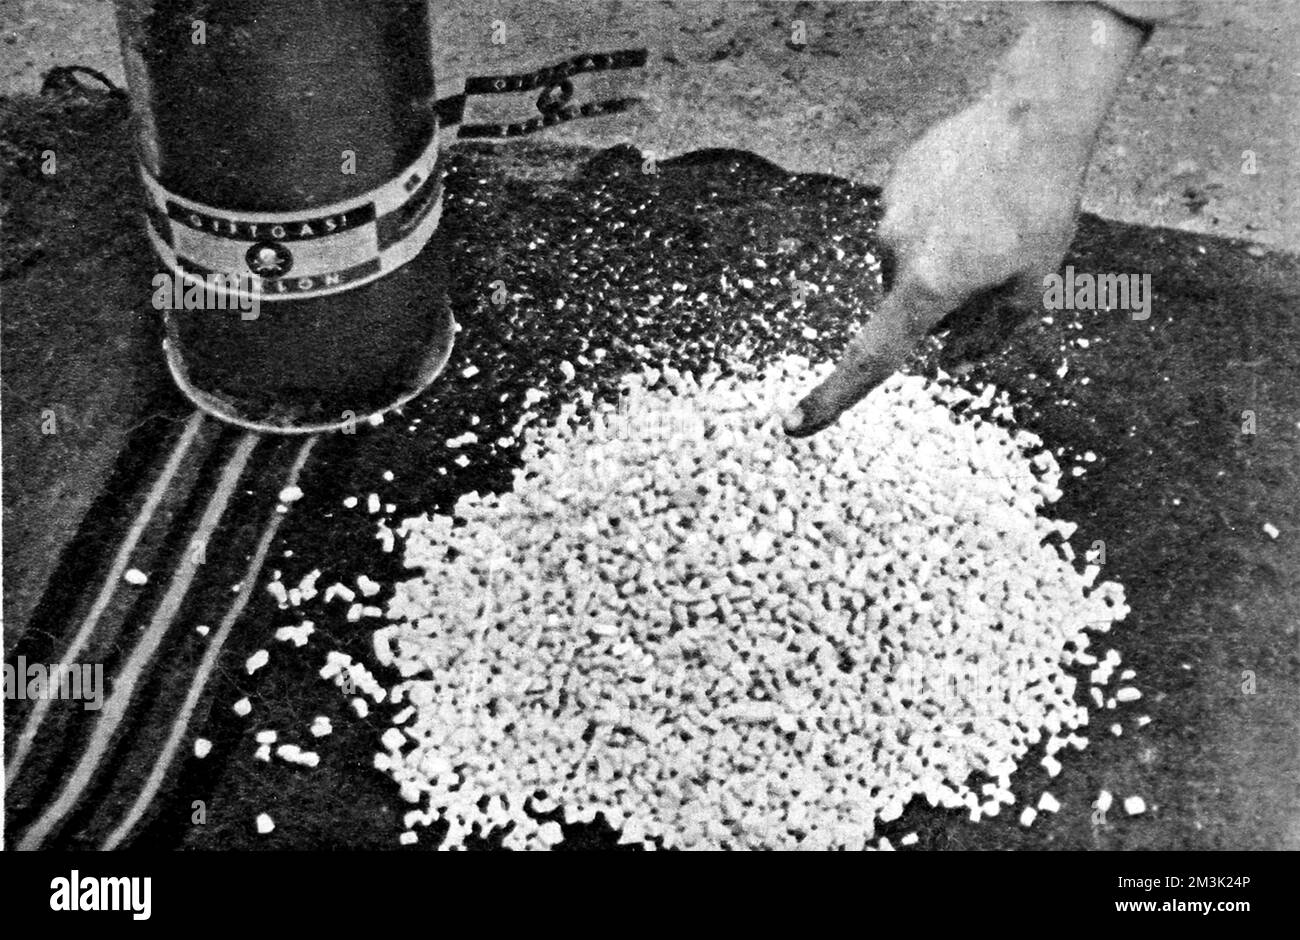 Einige Zyklon-B-Kristalle wurden im Konzentrationslager Majdanek in der Nähe von Lublin, Polen, 1944 gefangen. Majdanek wurde von 1941 bis 1944 von der Waffen-SS als Konzentrationslager geführt. Obwohl die Deutschen versuchten, die Beweise für ihre Gräueltaten im Lager zu vernichten, gab es zu viel zu verbergen, und die russische Armee nahm einen Großteil des Lagers intakt ein. Datum: 1944 Stockfoto